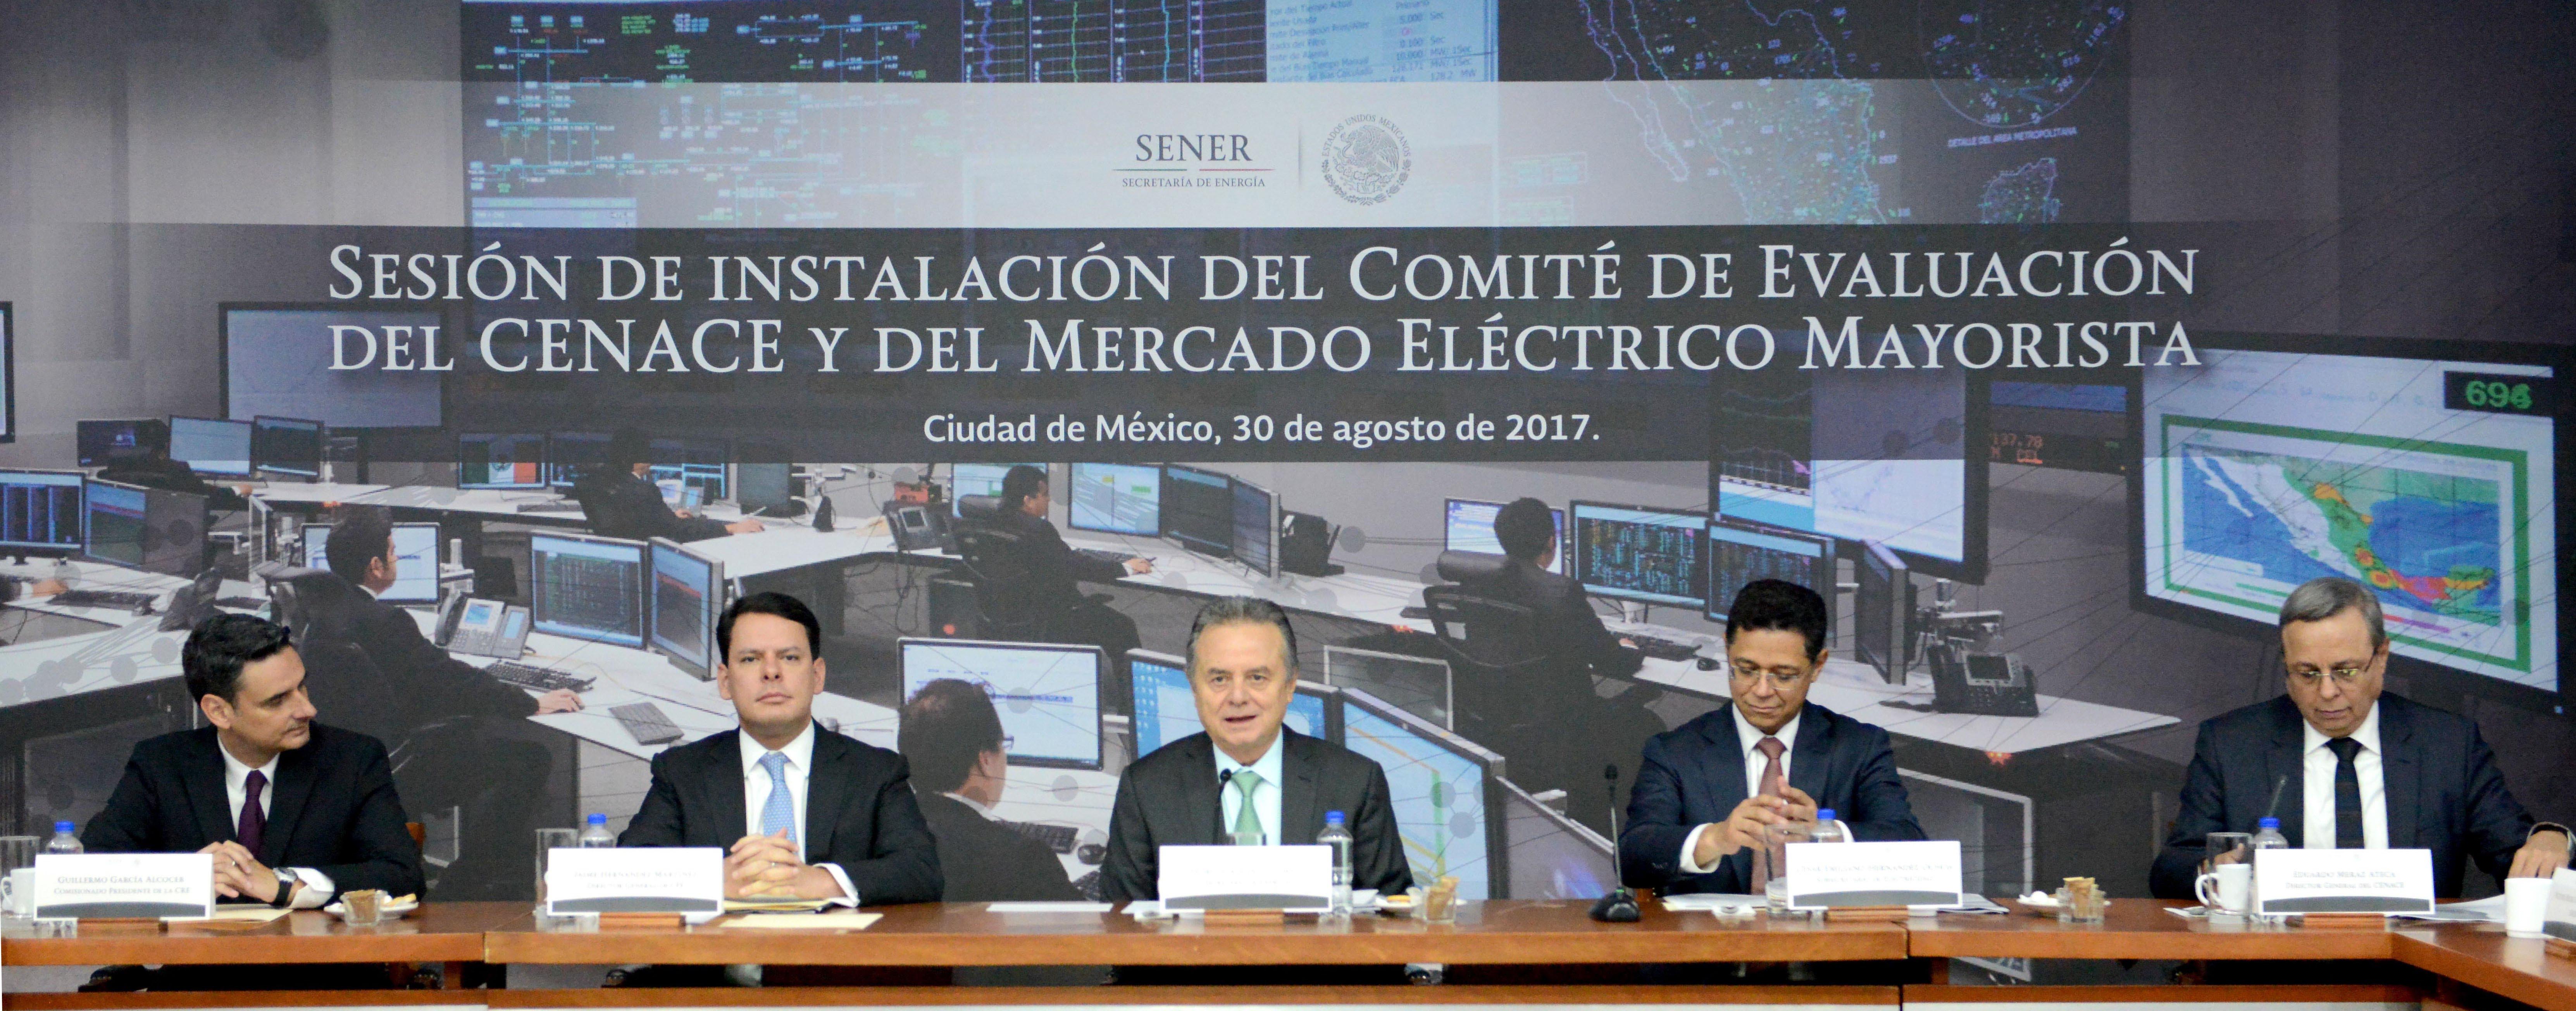 La Secretaría de Energía (SENER) en coordinación con la Comisión Reguladora de Energía (CRE), realizaron hoy la instalación del Comité de Evaluación del Centro Nacional de Control de Energía (CENACE) y del Mercado Eléctrico Mayorista (MEM), de acuerdo a lo que establece la Ley de la Industria Eléctrica que se promulgó el 11 de agosto de 2014.